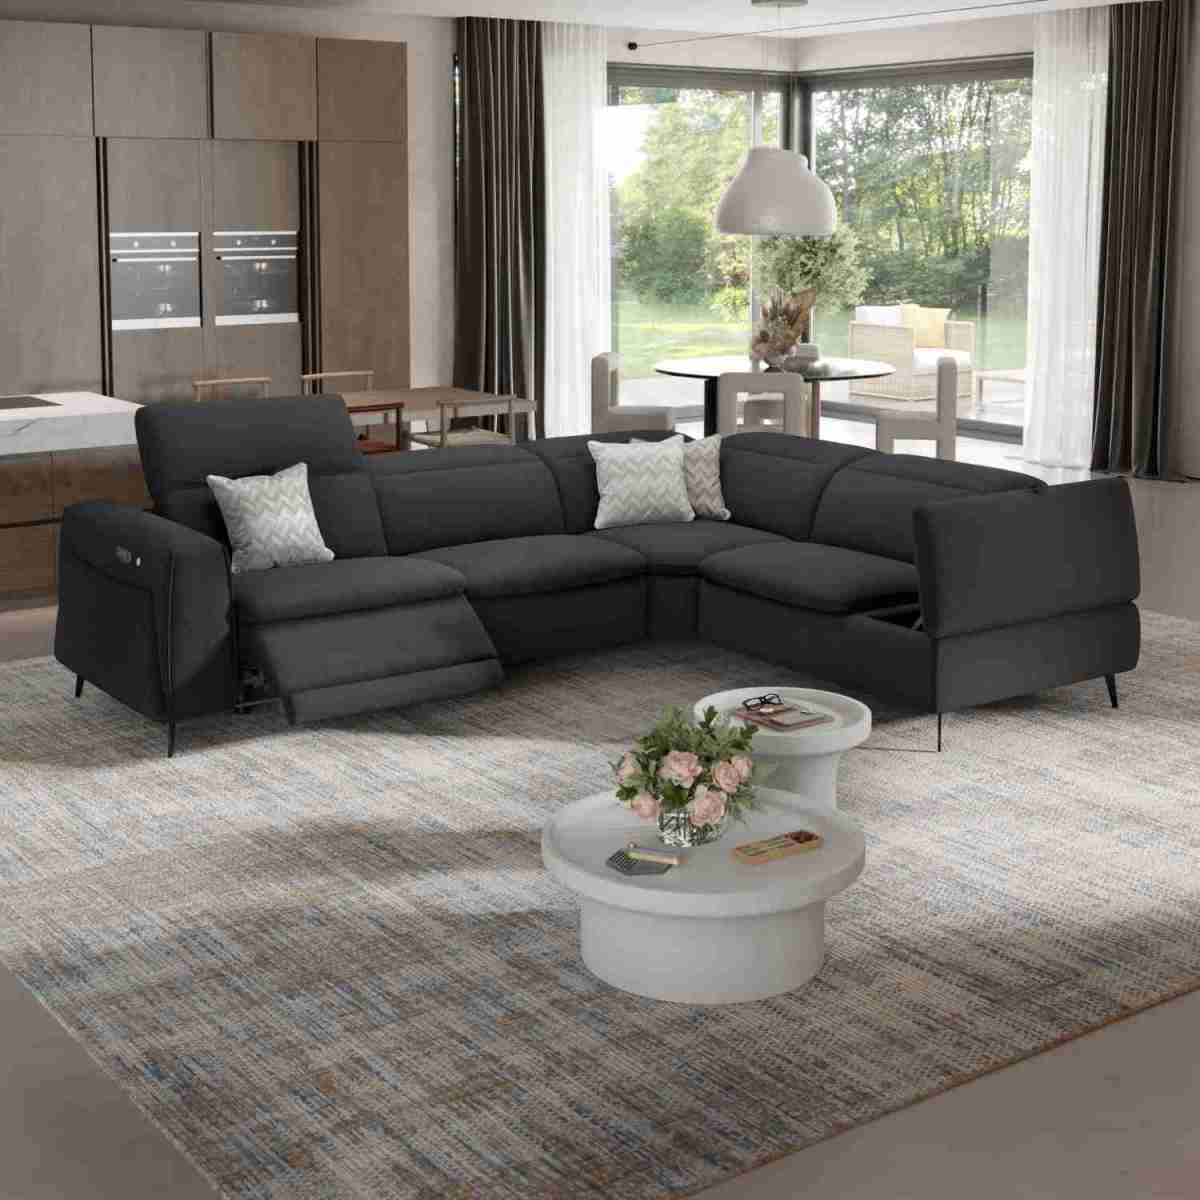 Produktvorstellung Auf allen Ebenen charmant: Couch Belluno kommt mit wärmender Sitzheizung - News, Bild 2